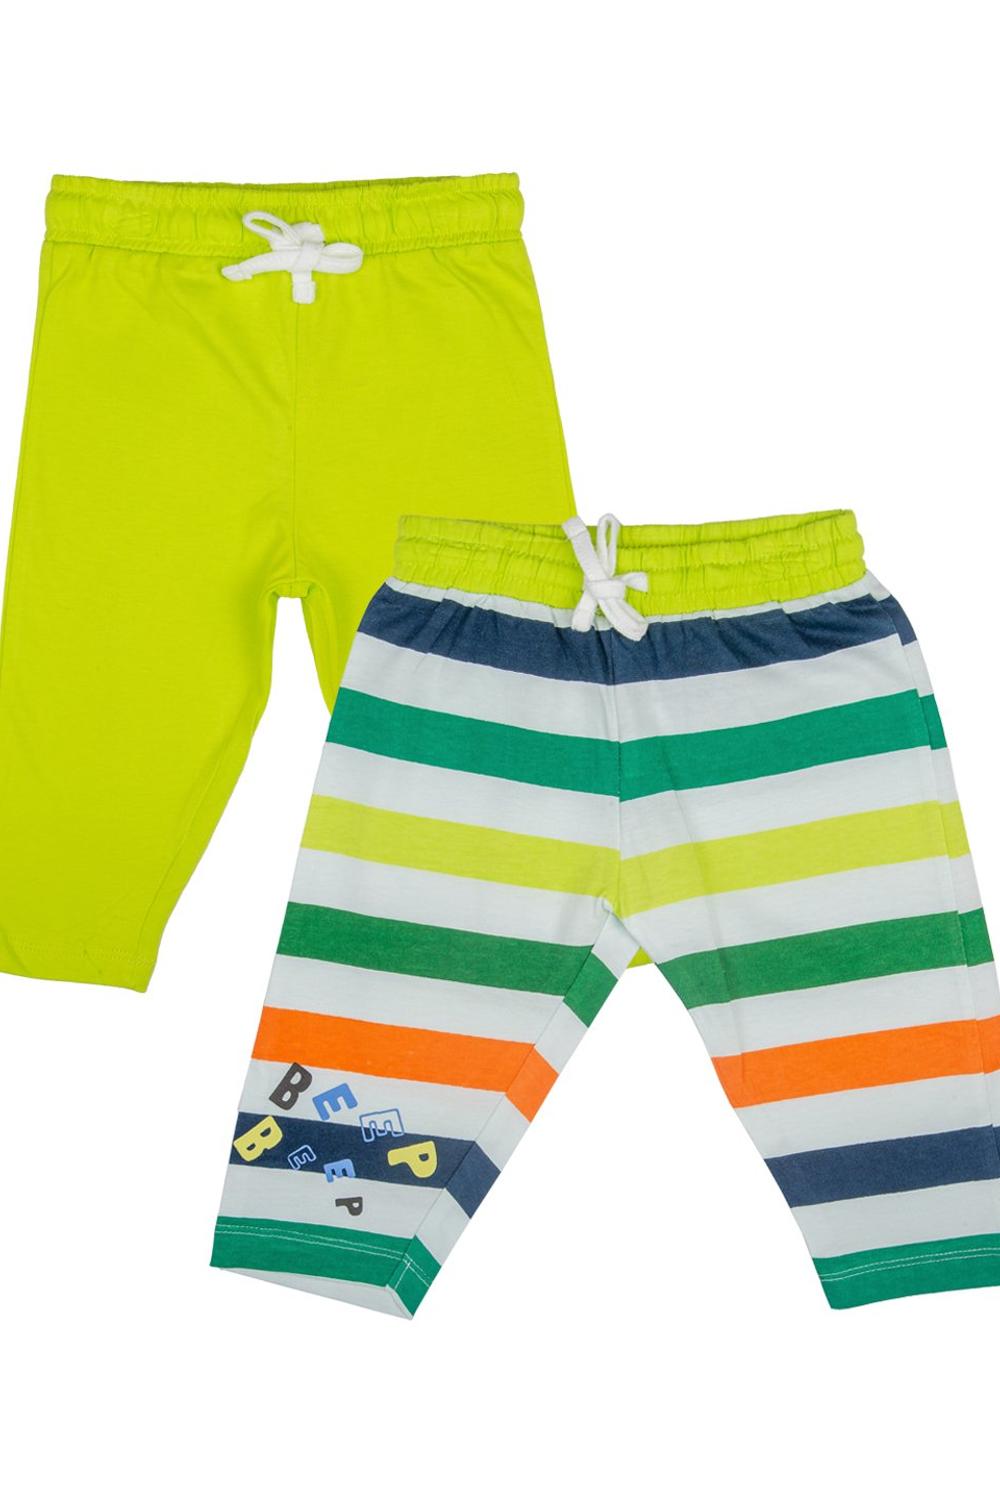 Mee Mee Boys Pack Of 2 Track pants – Lime & Multi Stripe